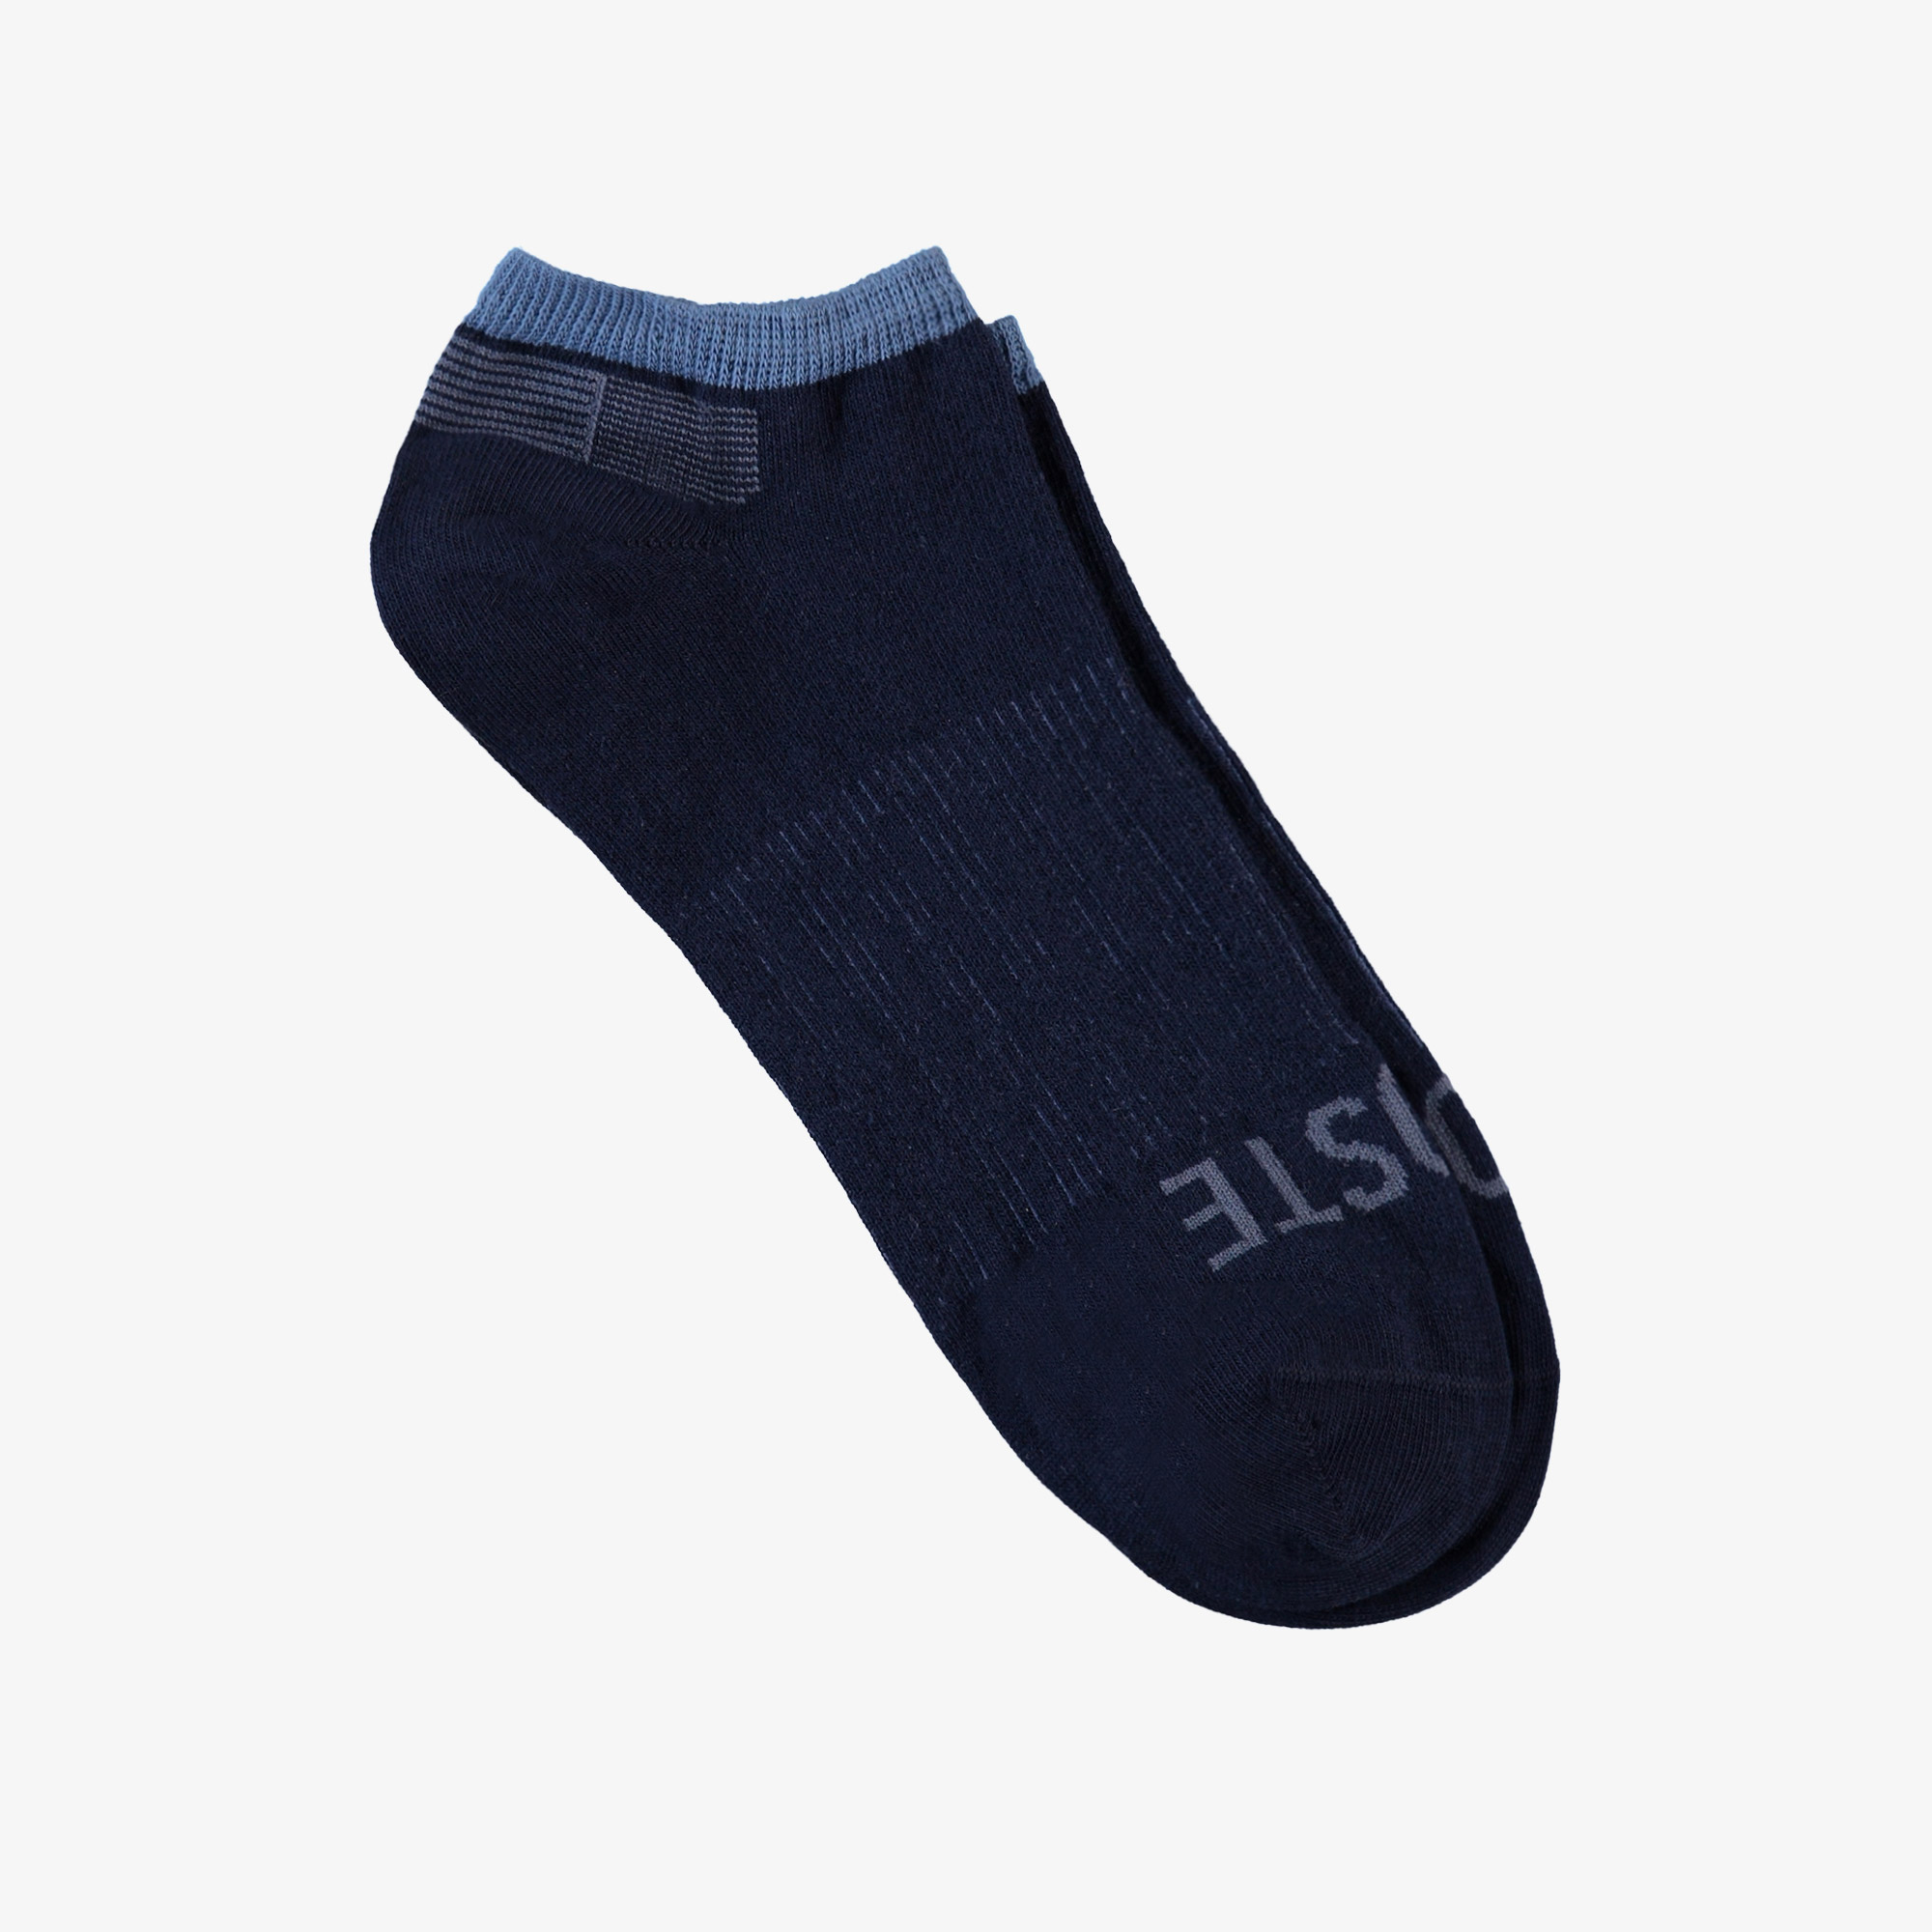 Lacoste ponožky unisex